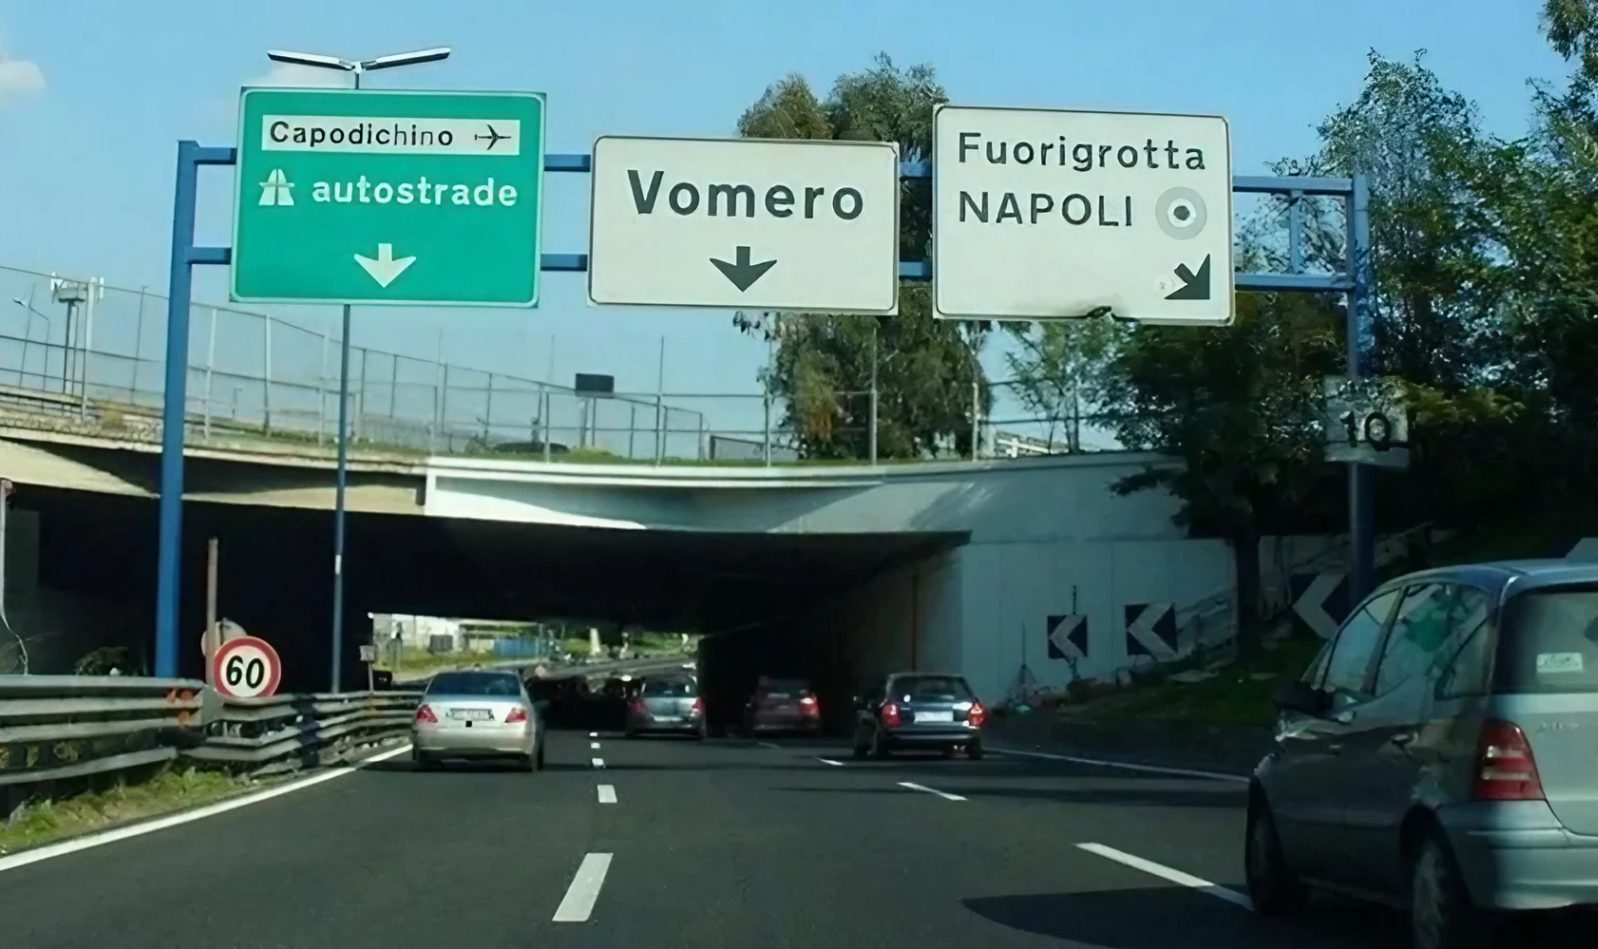 Périphérique de Naples, sortie Vomero Fuorigrotta